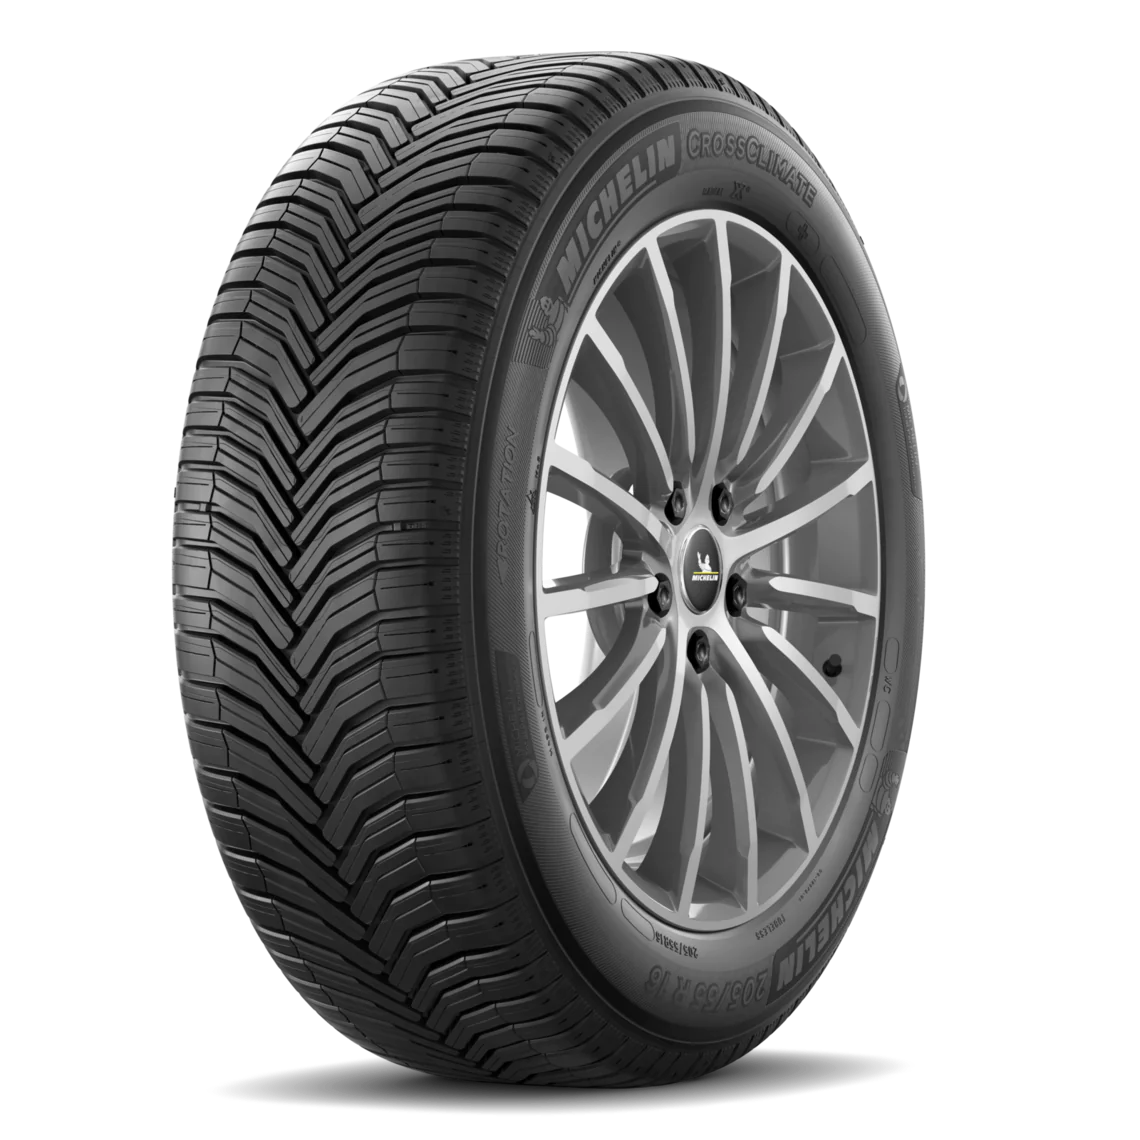 Michelin Michelin 275/55 R19 111V CROSS CLIMATE pneumatici nuovi All Season 